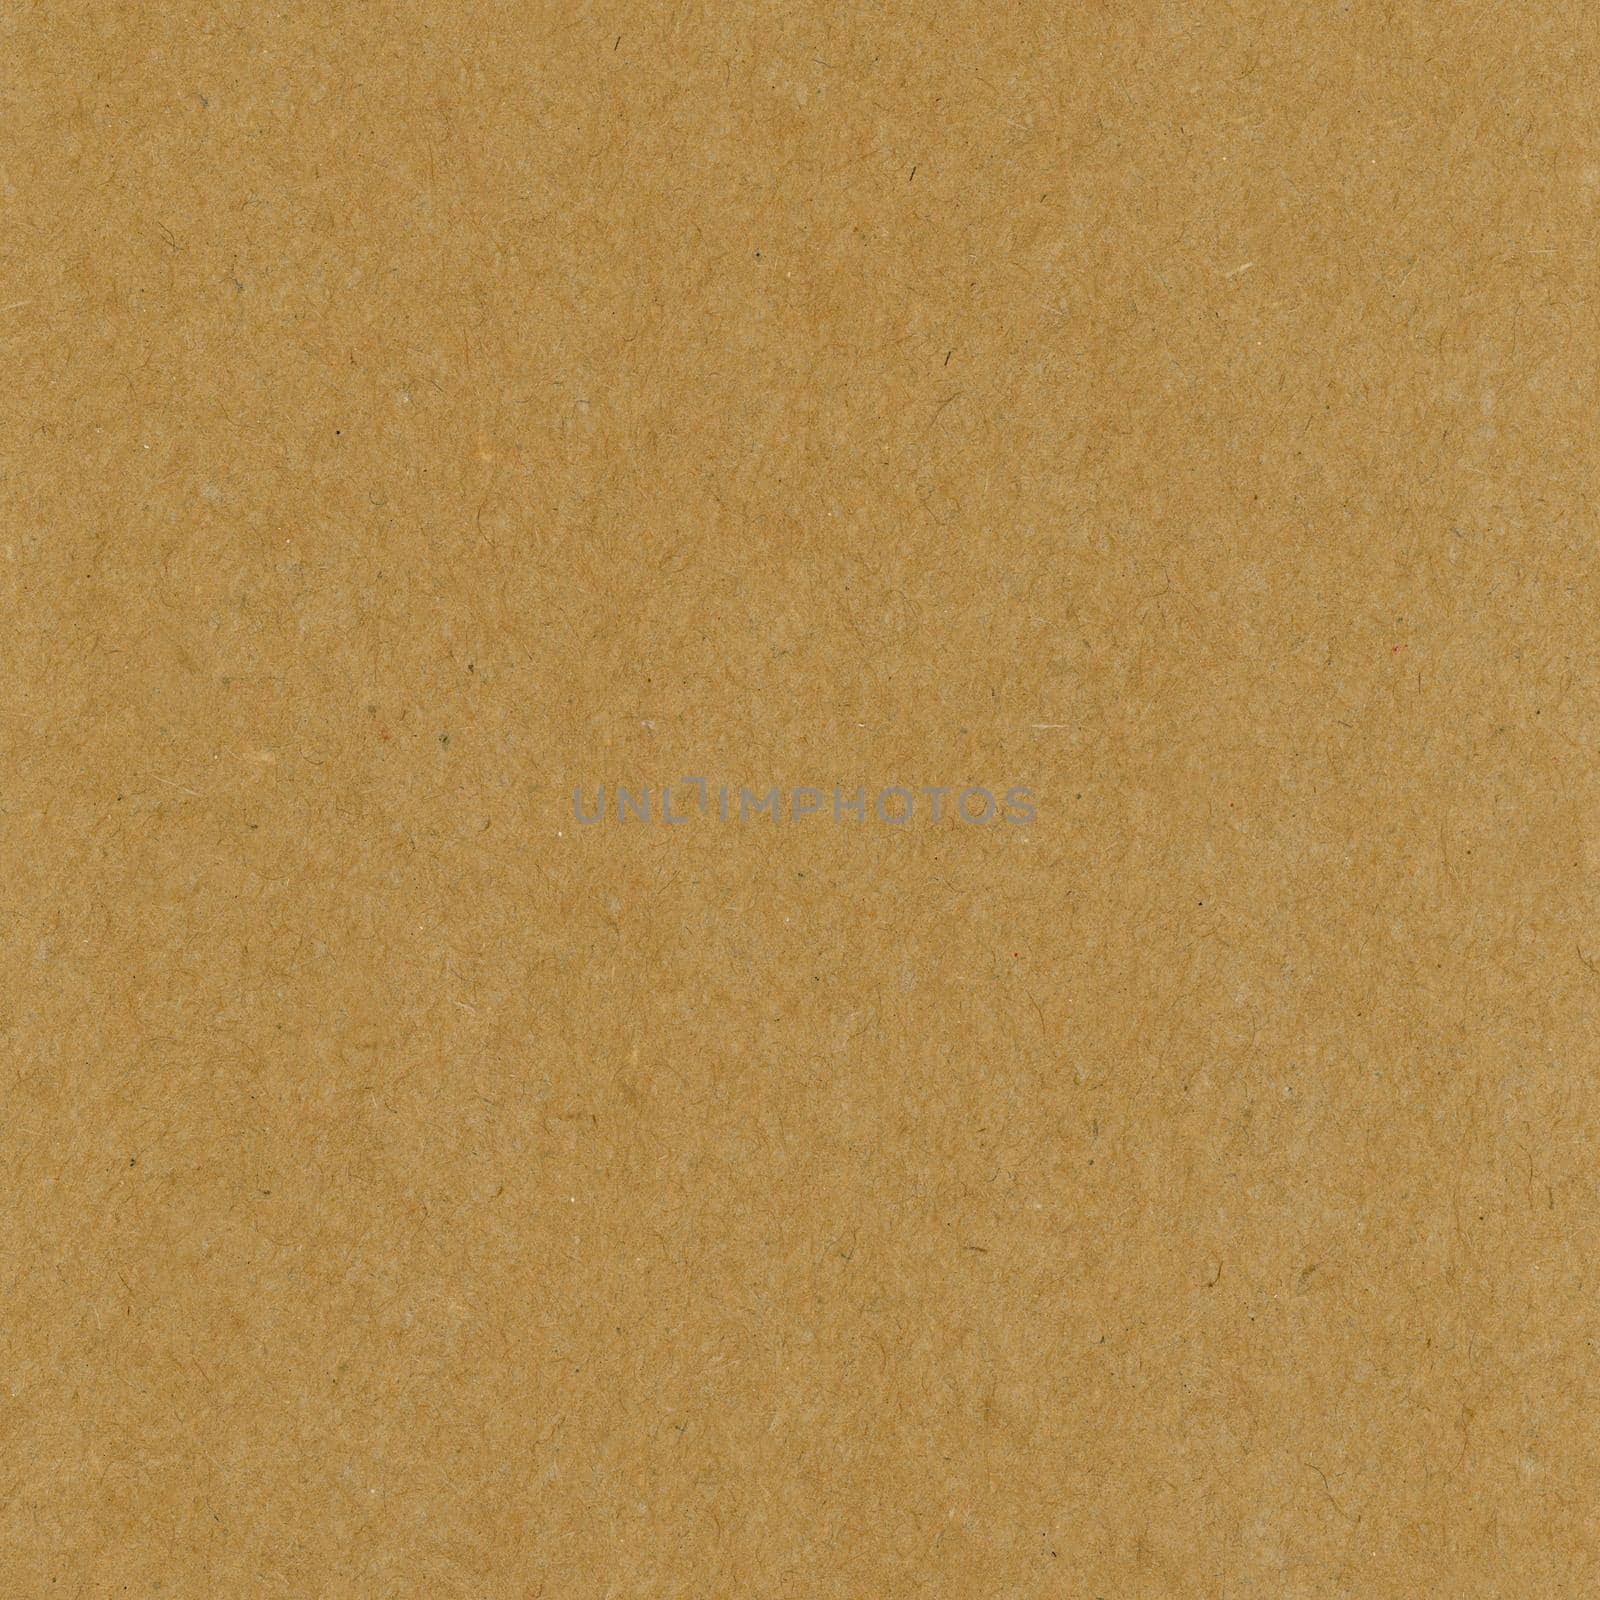 dark brown cardboard texture background by claudiodivizia